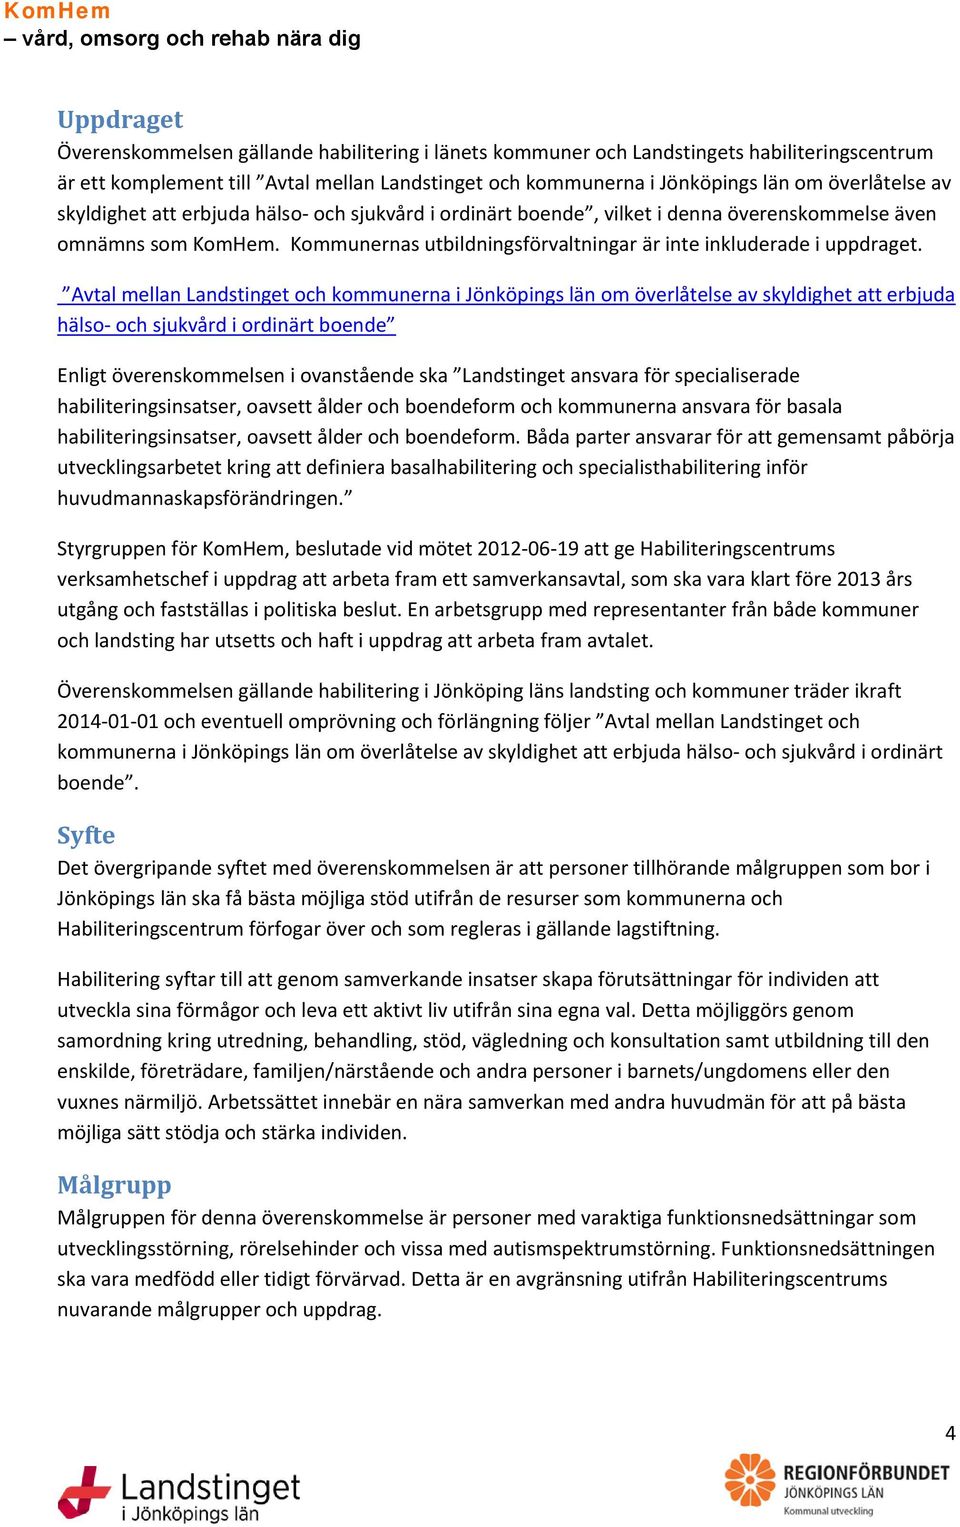 Avtal mellan Landstinget och kommunerna i Jönköpings län om överlåtelse av skyldighet att erbjuda hälso- och sjukvård i ordinärt boende Enligt överenskommelsen i ovanstående ska Landstinget ansvara